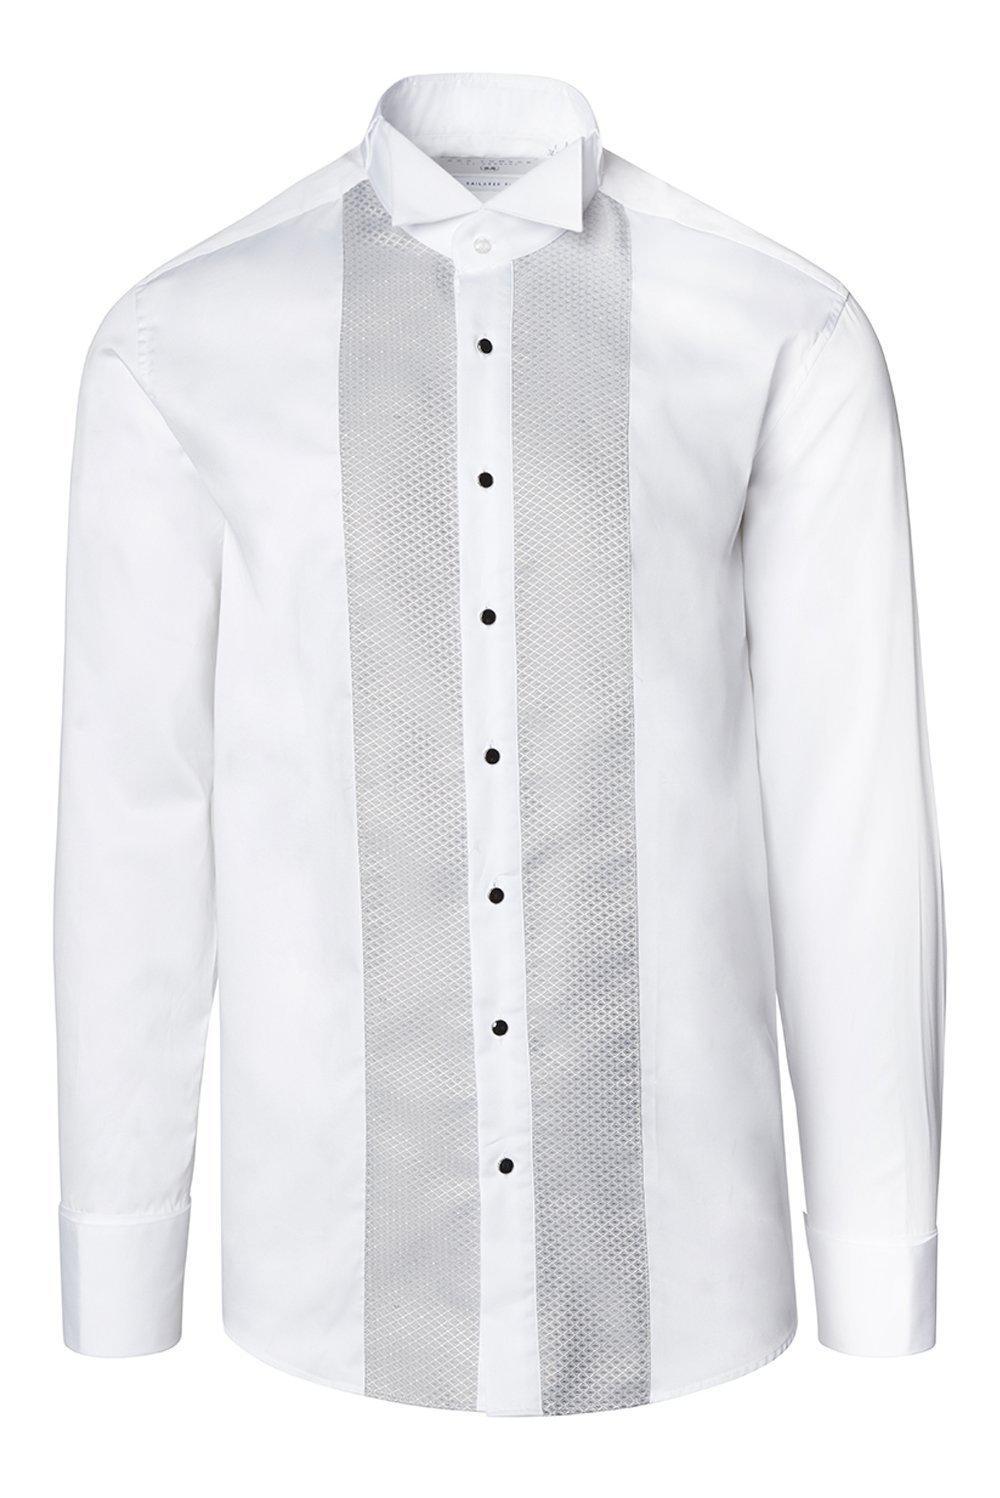 Pique Bib Tuxedo Shirt - White Grey - Ron Tomson